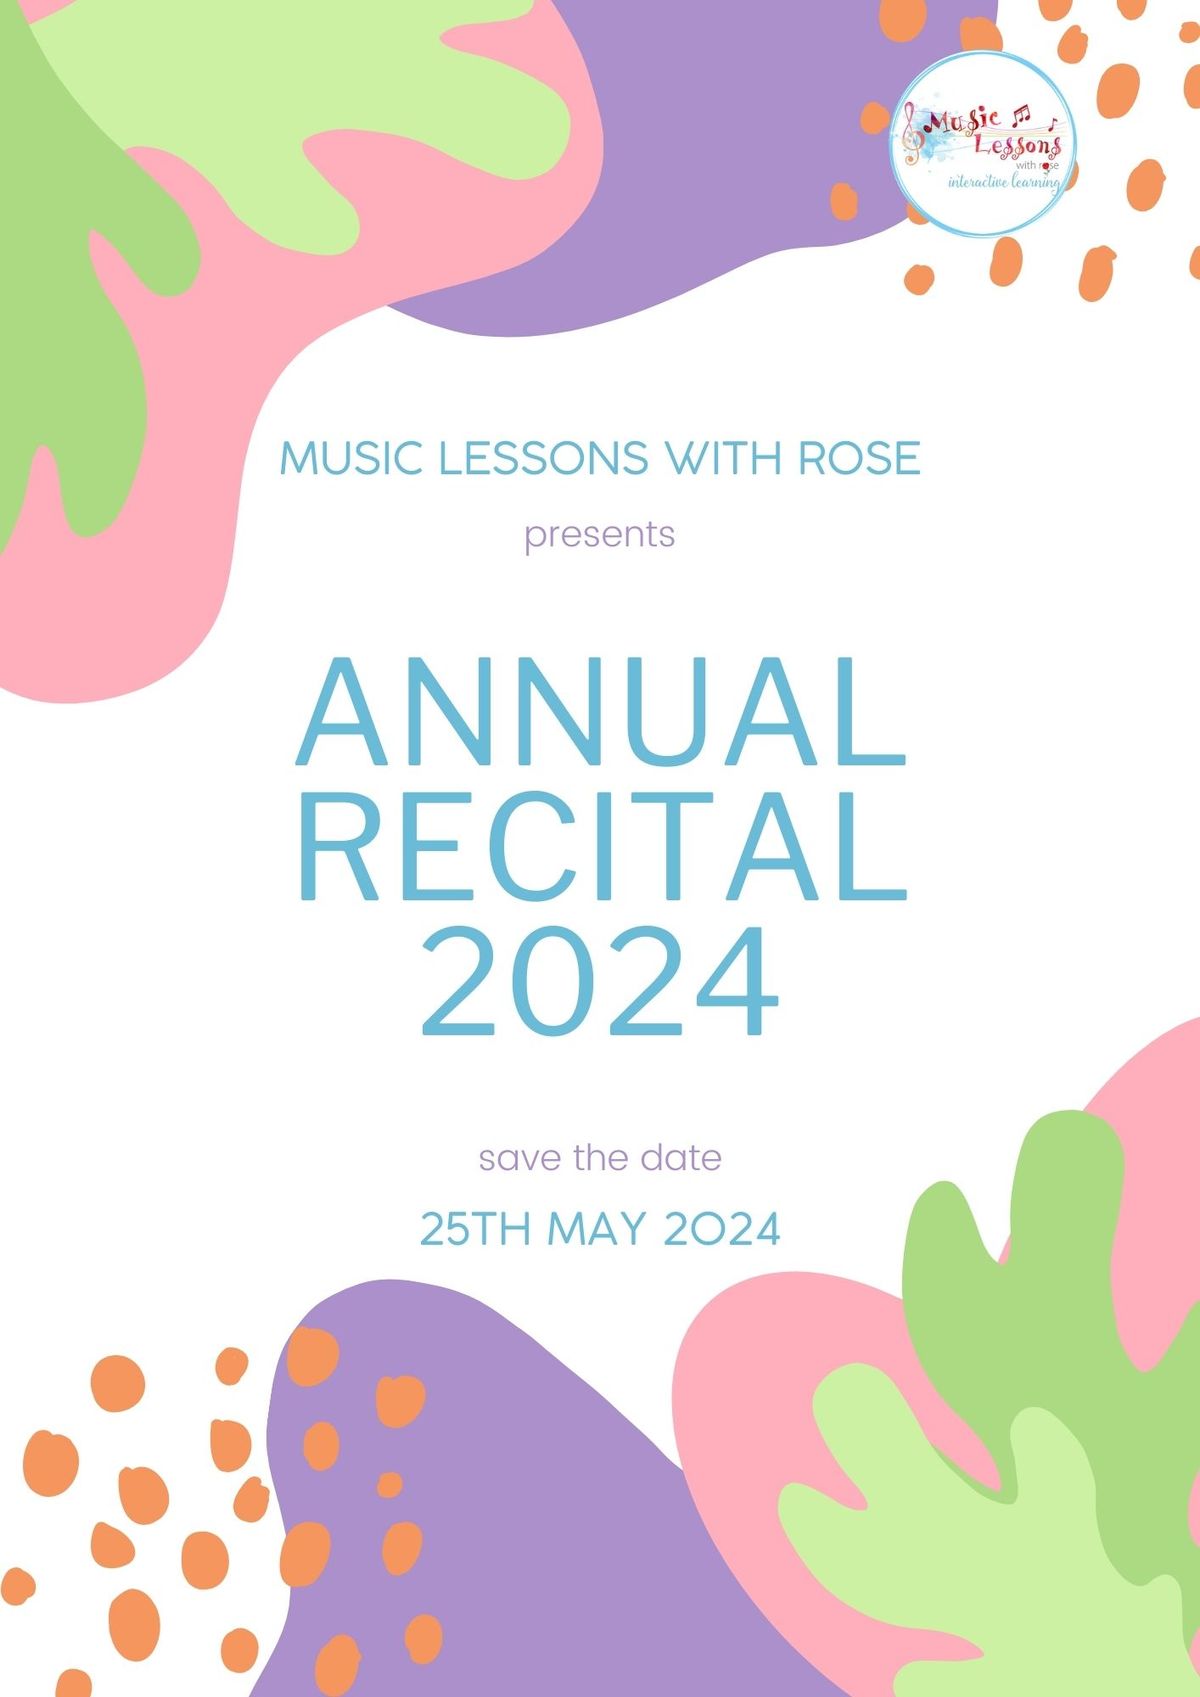 Annual Recital 2024